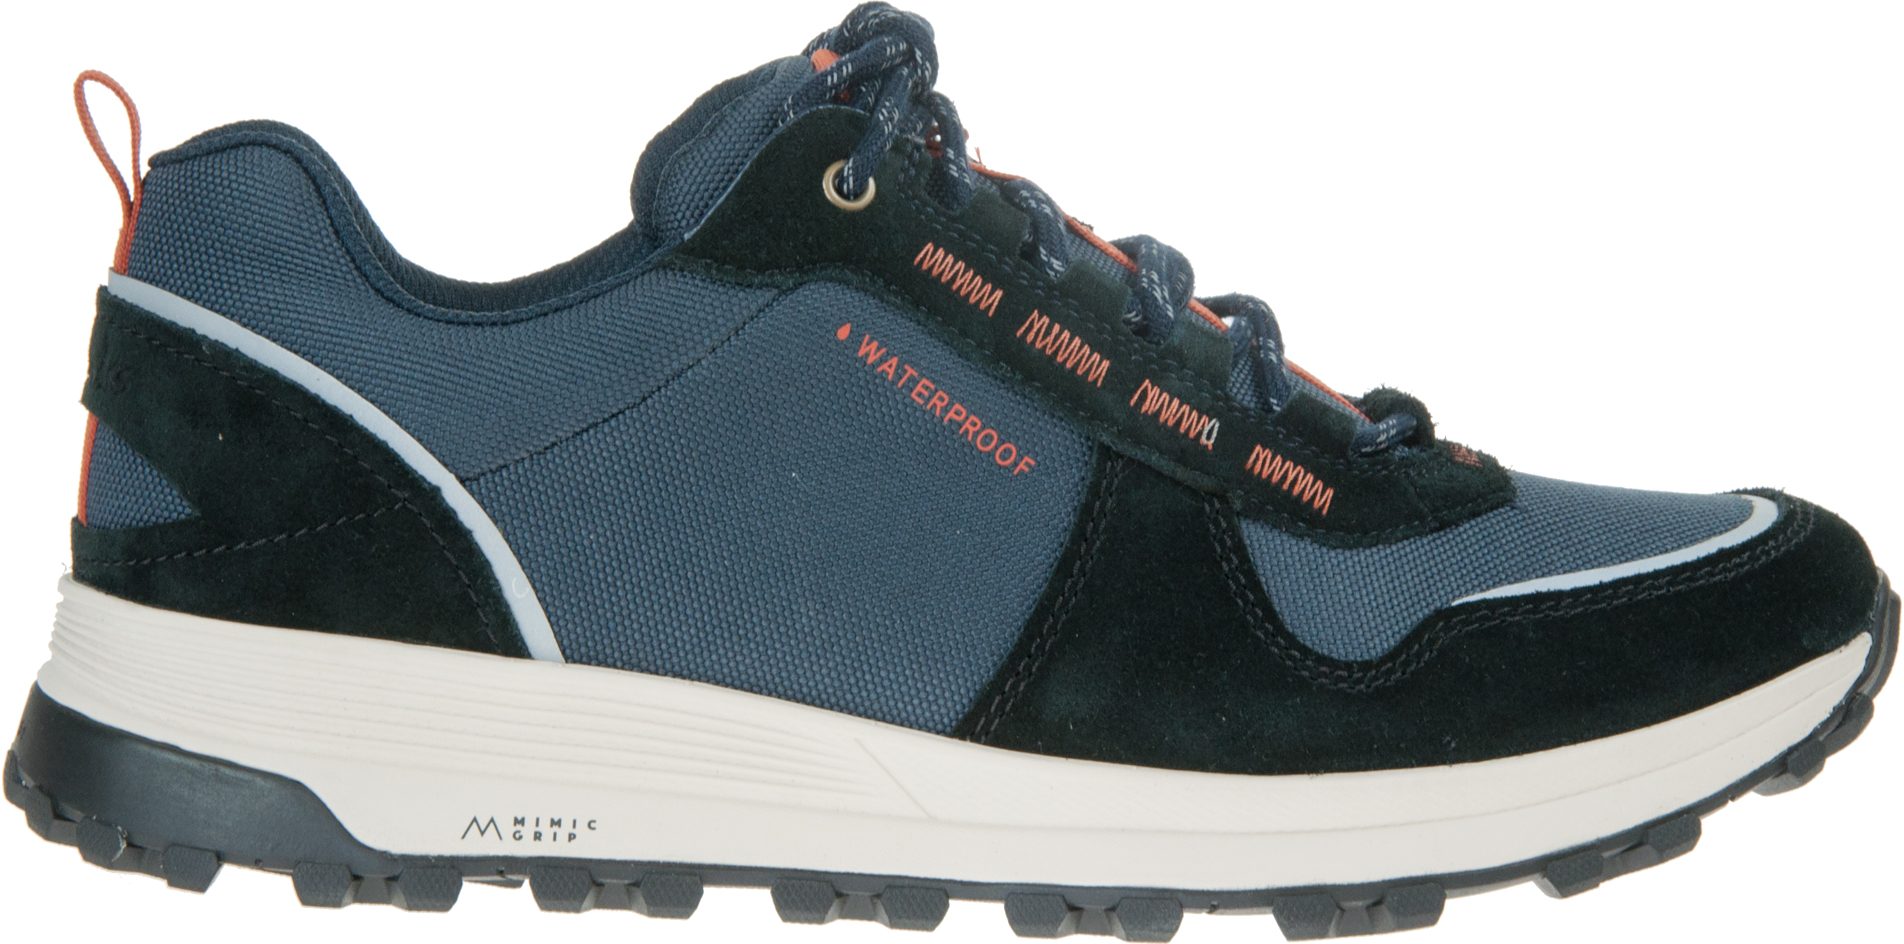 Clarks ATL Trek Walk Waterproof Navy Combi 26165739 - Casual Shoes ...